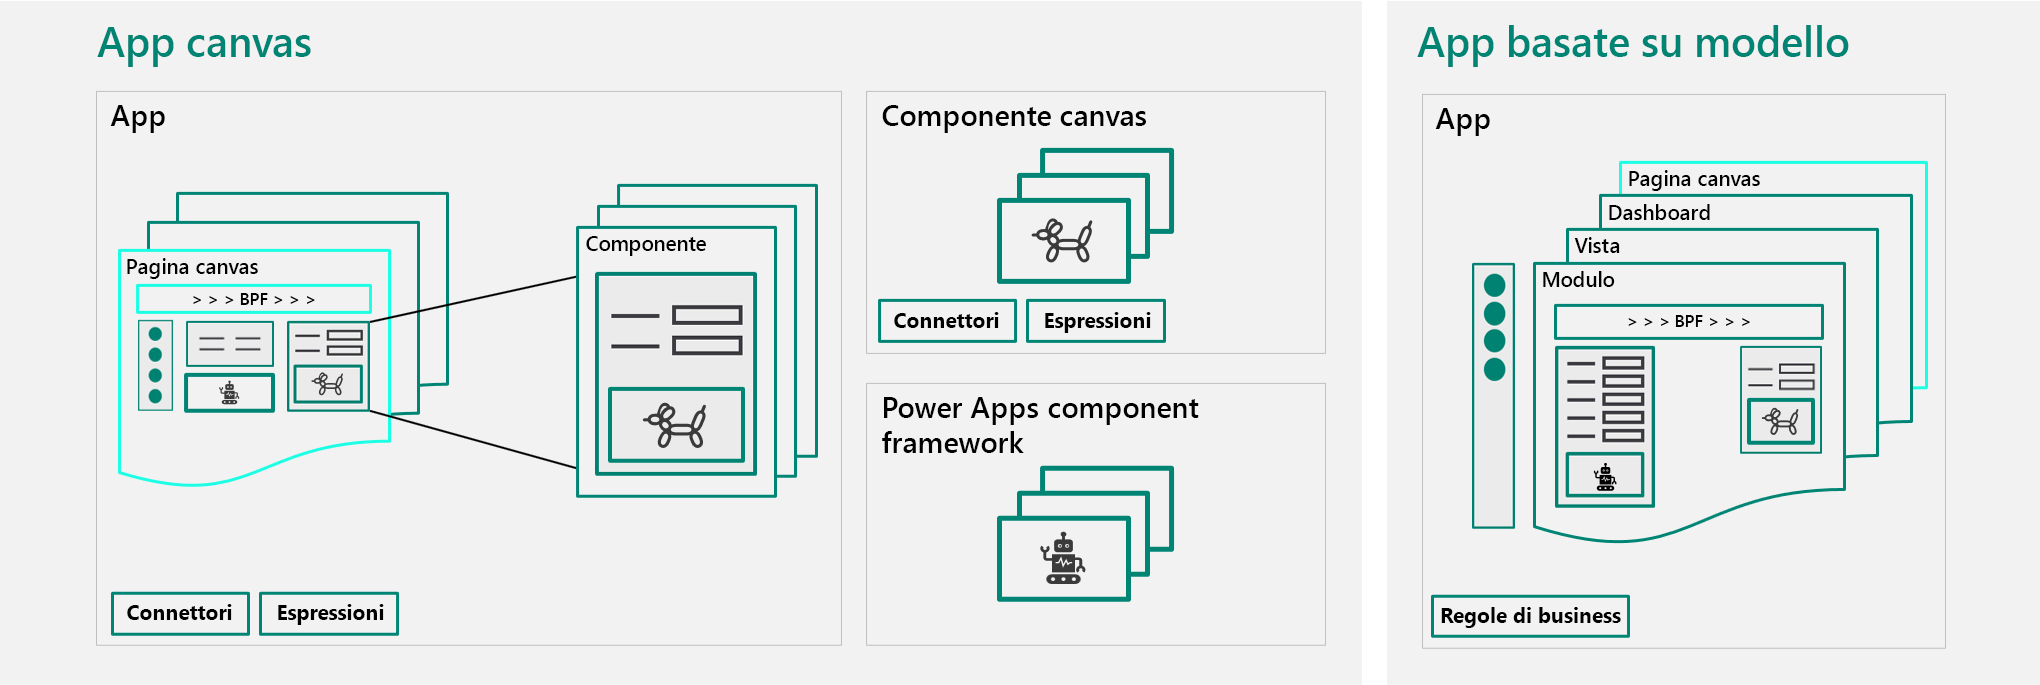 Diagramma delle app canvas e delle app basate su modello in base a come vengono gestite attualmente.